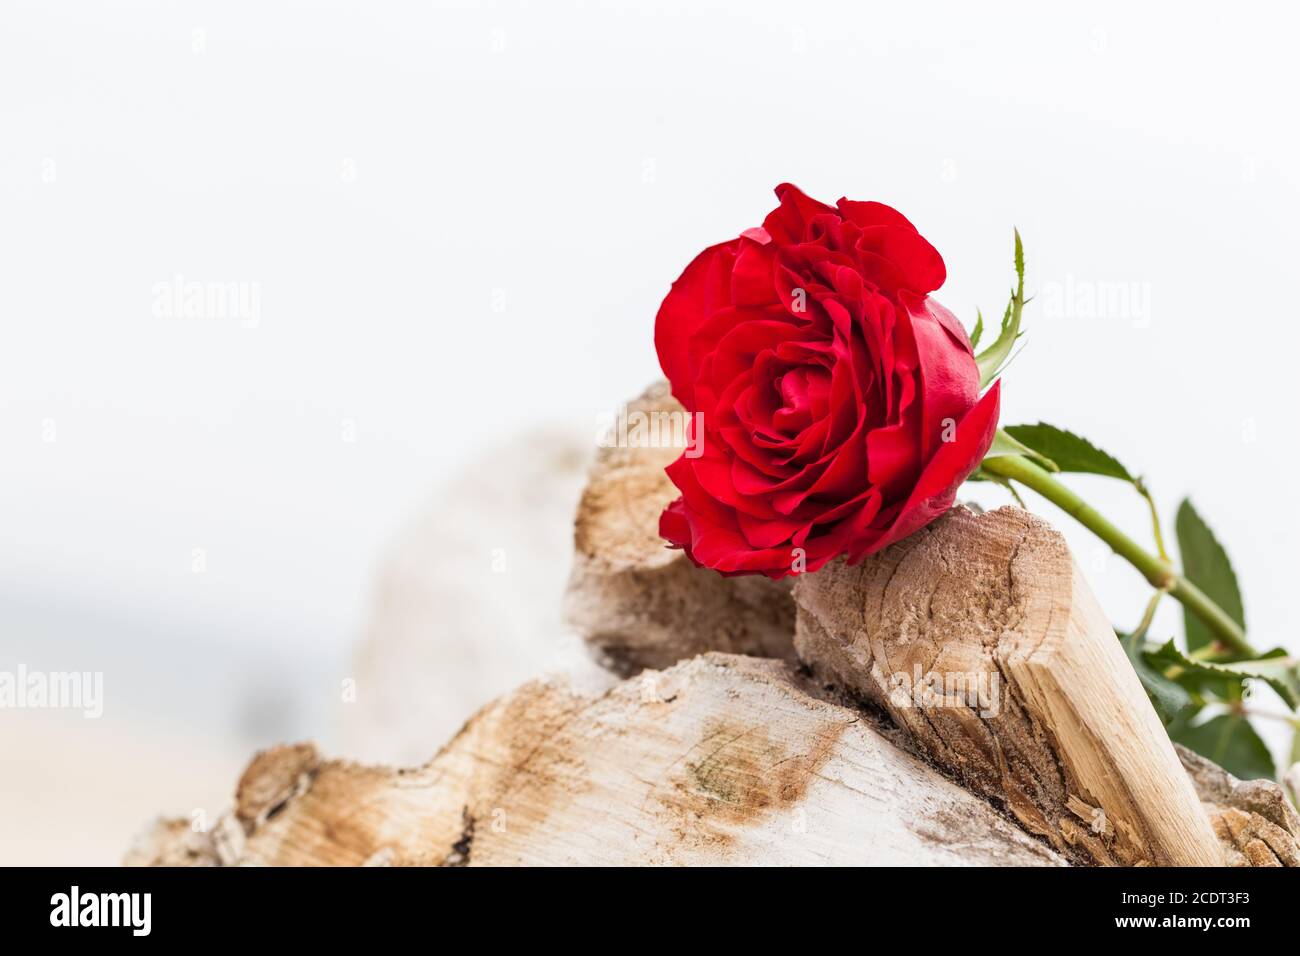 Rose rouge sur la plage. Amour, romance, mélancolie concepts. Banque D'Images